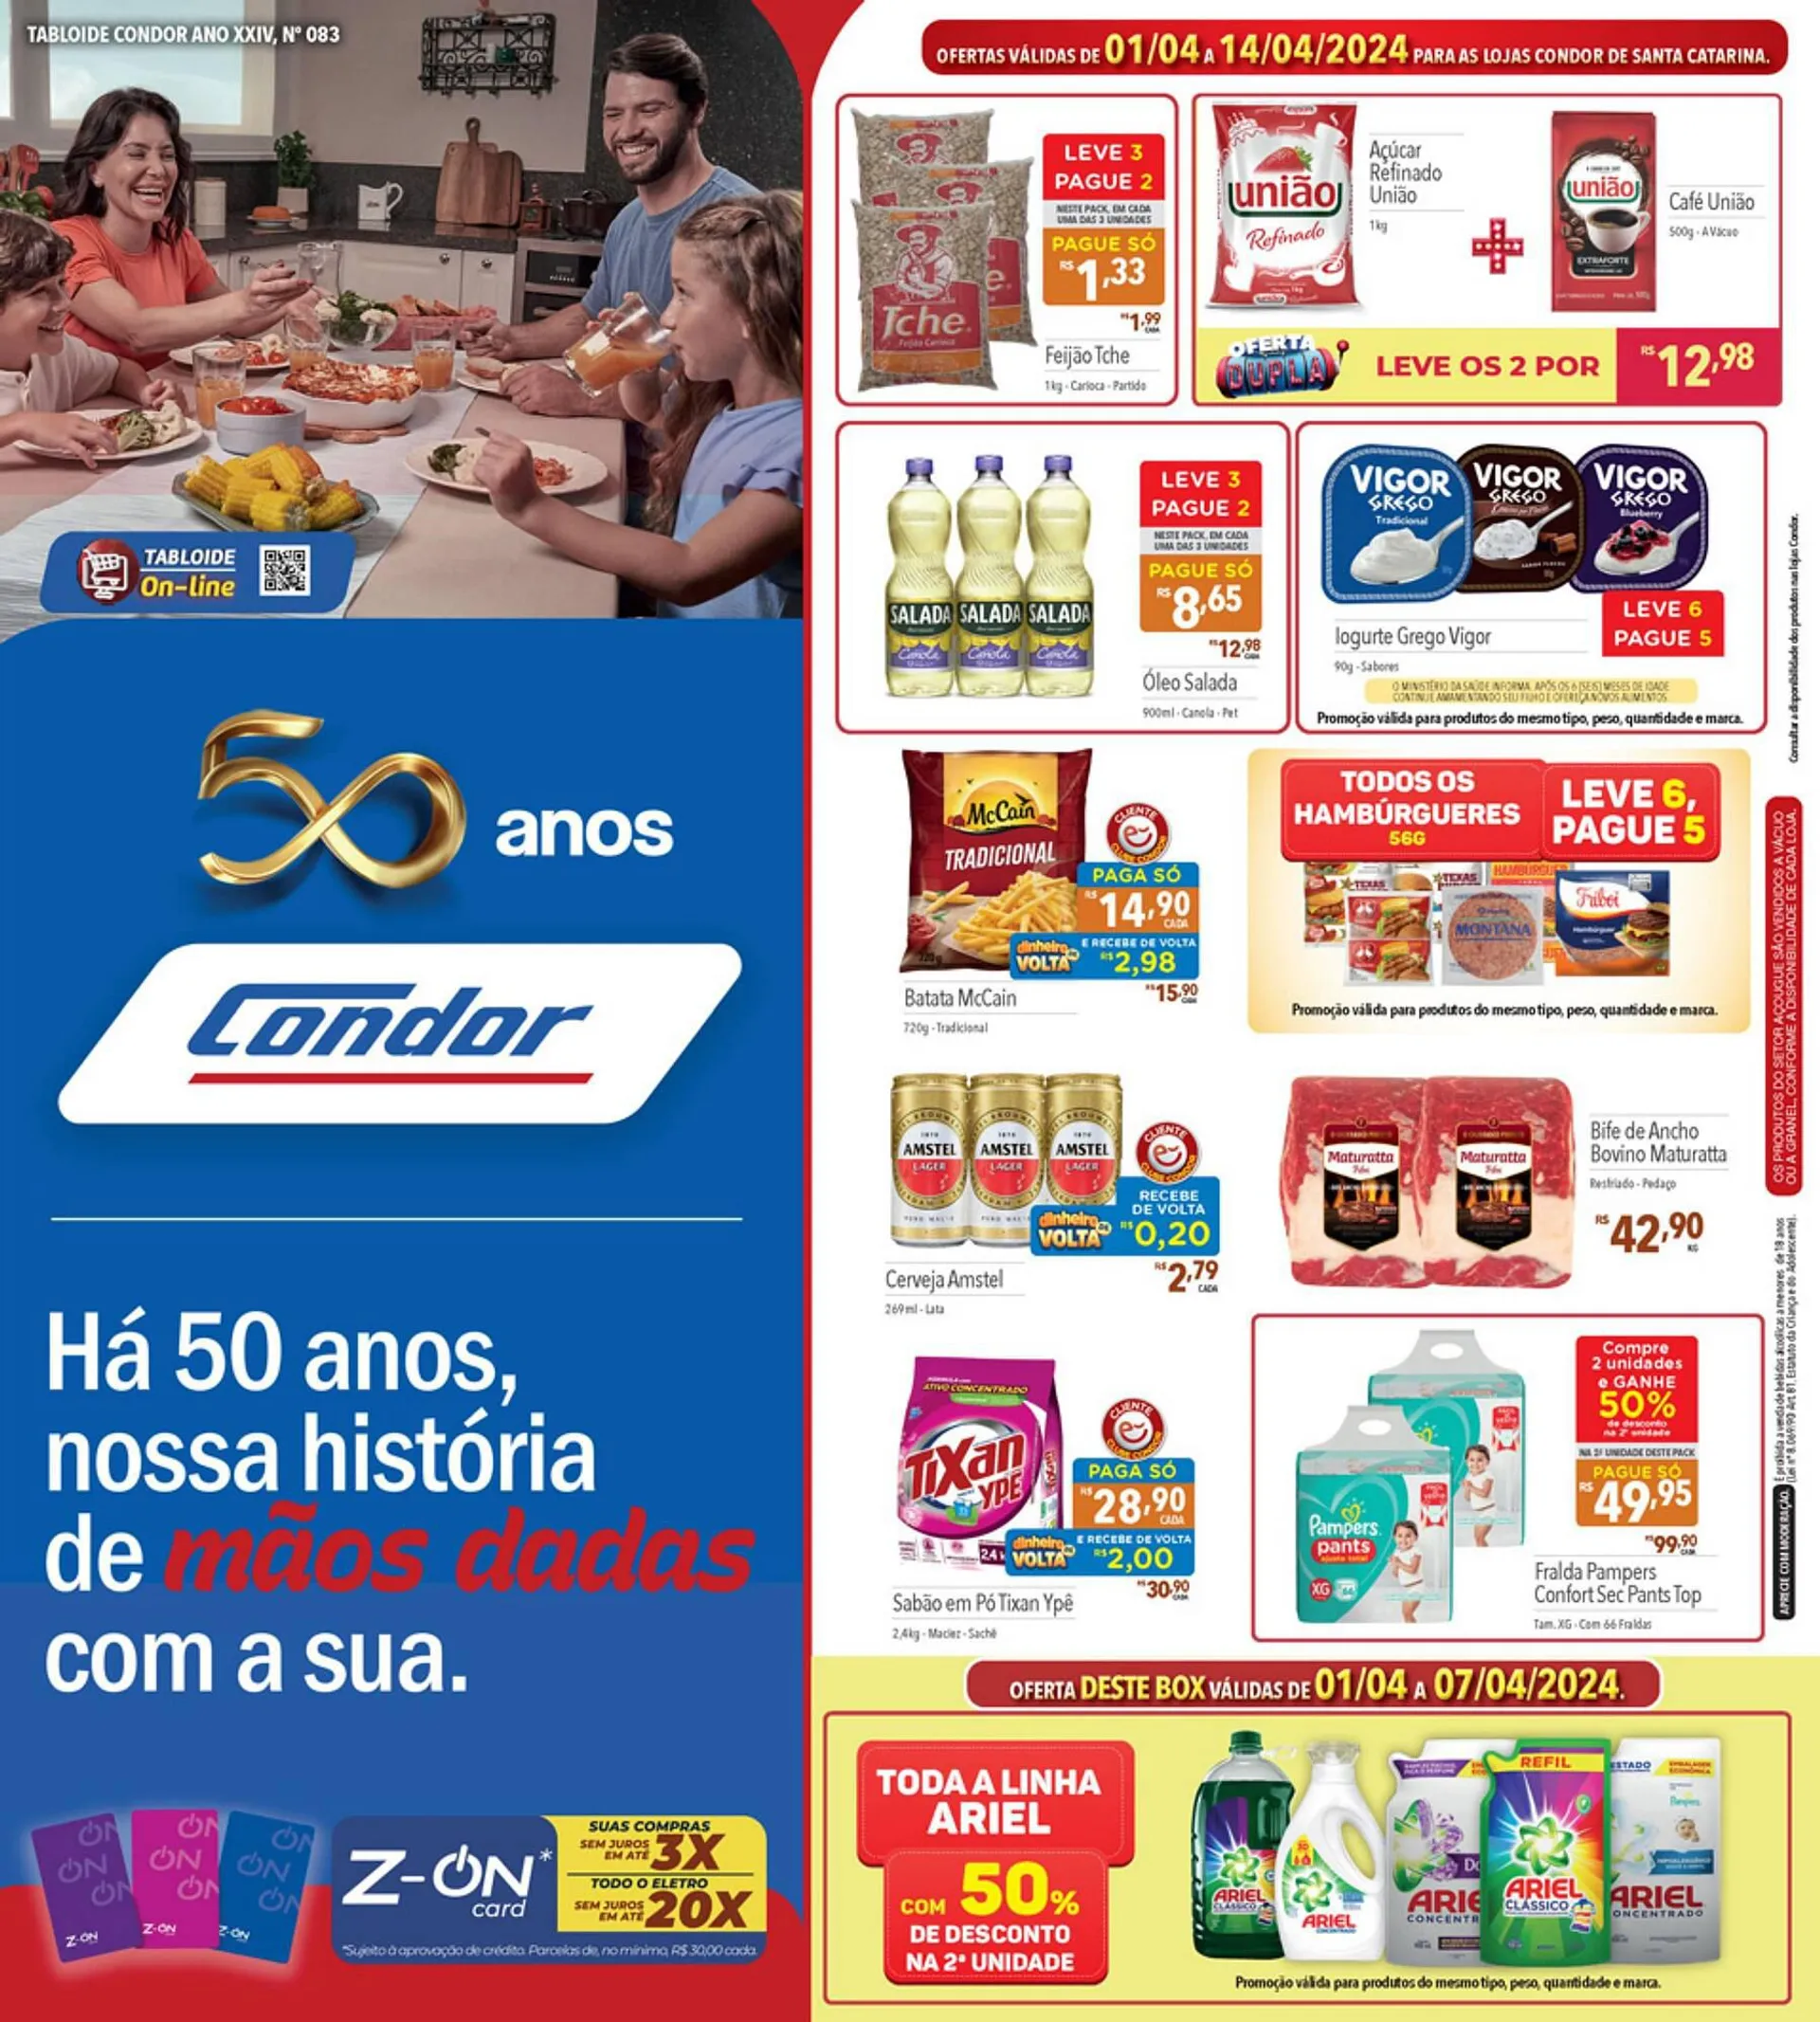 Encarte de Catálogo Supermercados Condor 2 de abril até 14 de abril 2024 - Pagina 